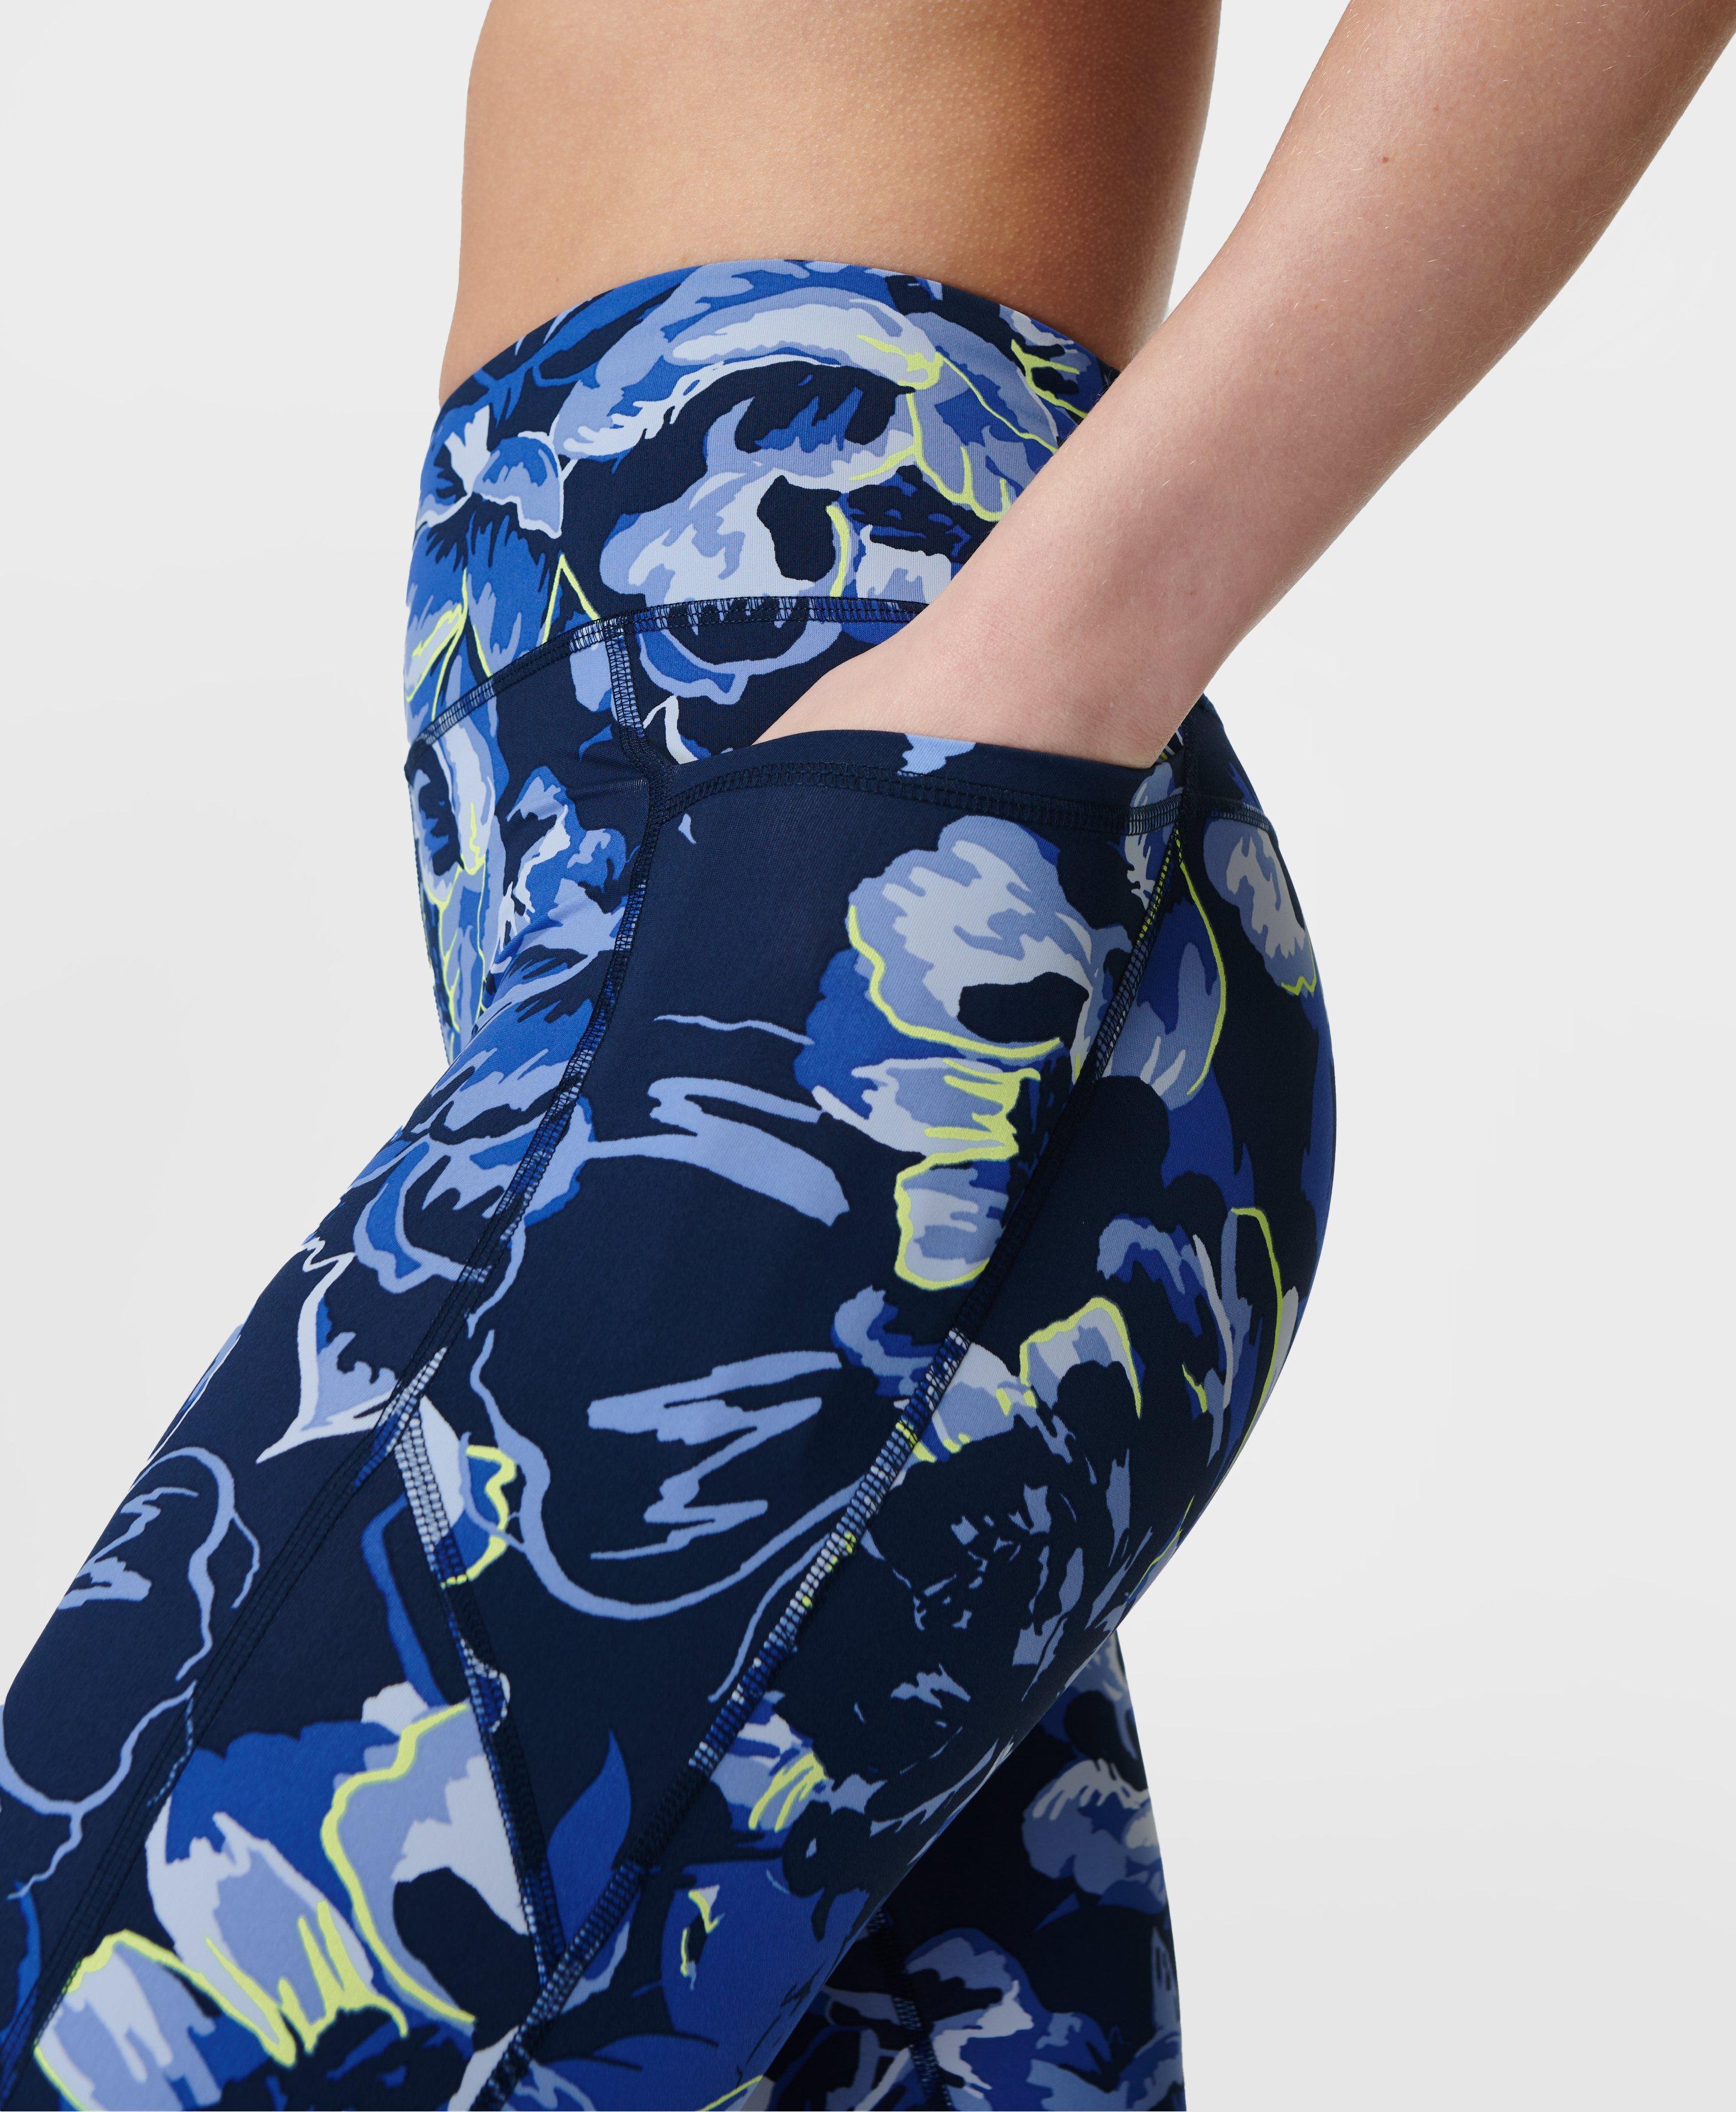 Zero Gravity High-Waisted 7/8 Running Leggings - Blue Ornate Floral Print, Women's Leggings